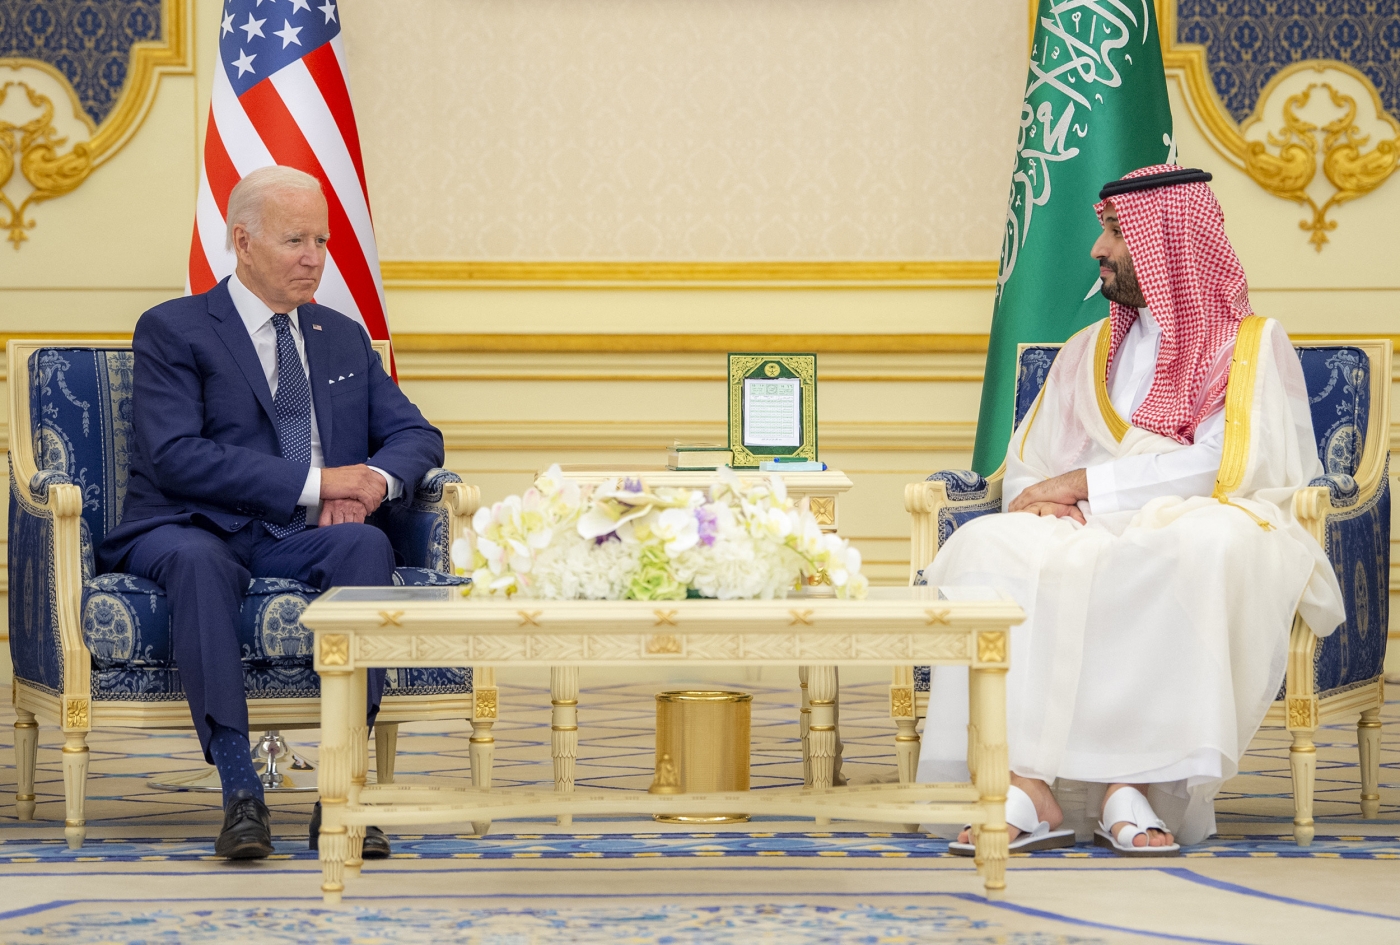 Le prince héritier saoudien Mohammed ben Salmane rencontre le président américain Joe Biden au palais al-Salam, dans la ville portuaire de Djeddah bordant la mer Rouge, le 15 juillet 2022 (AFP)